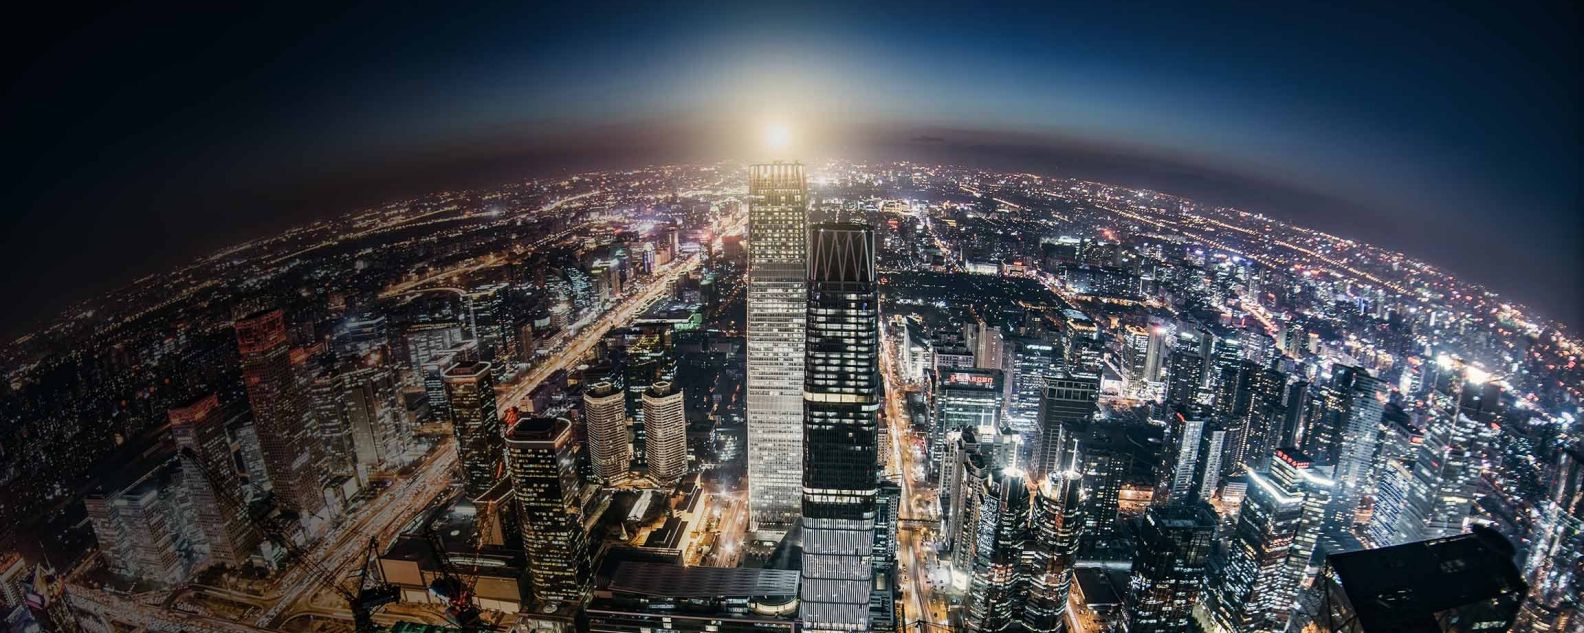 Vista aérea del centro de la ciudad por la noche